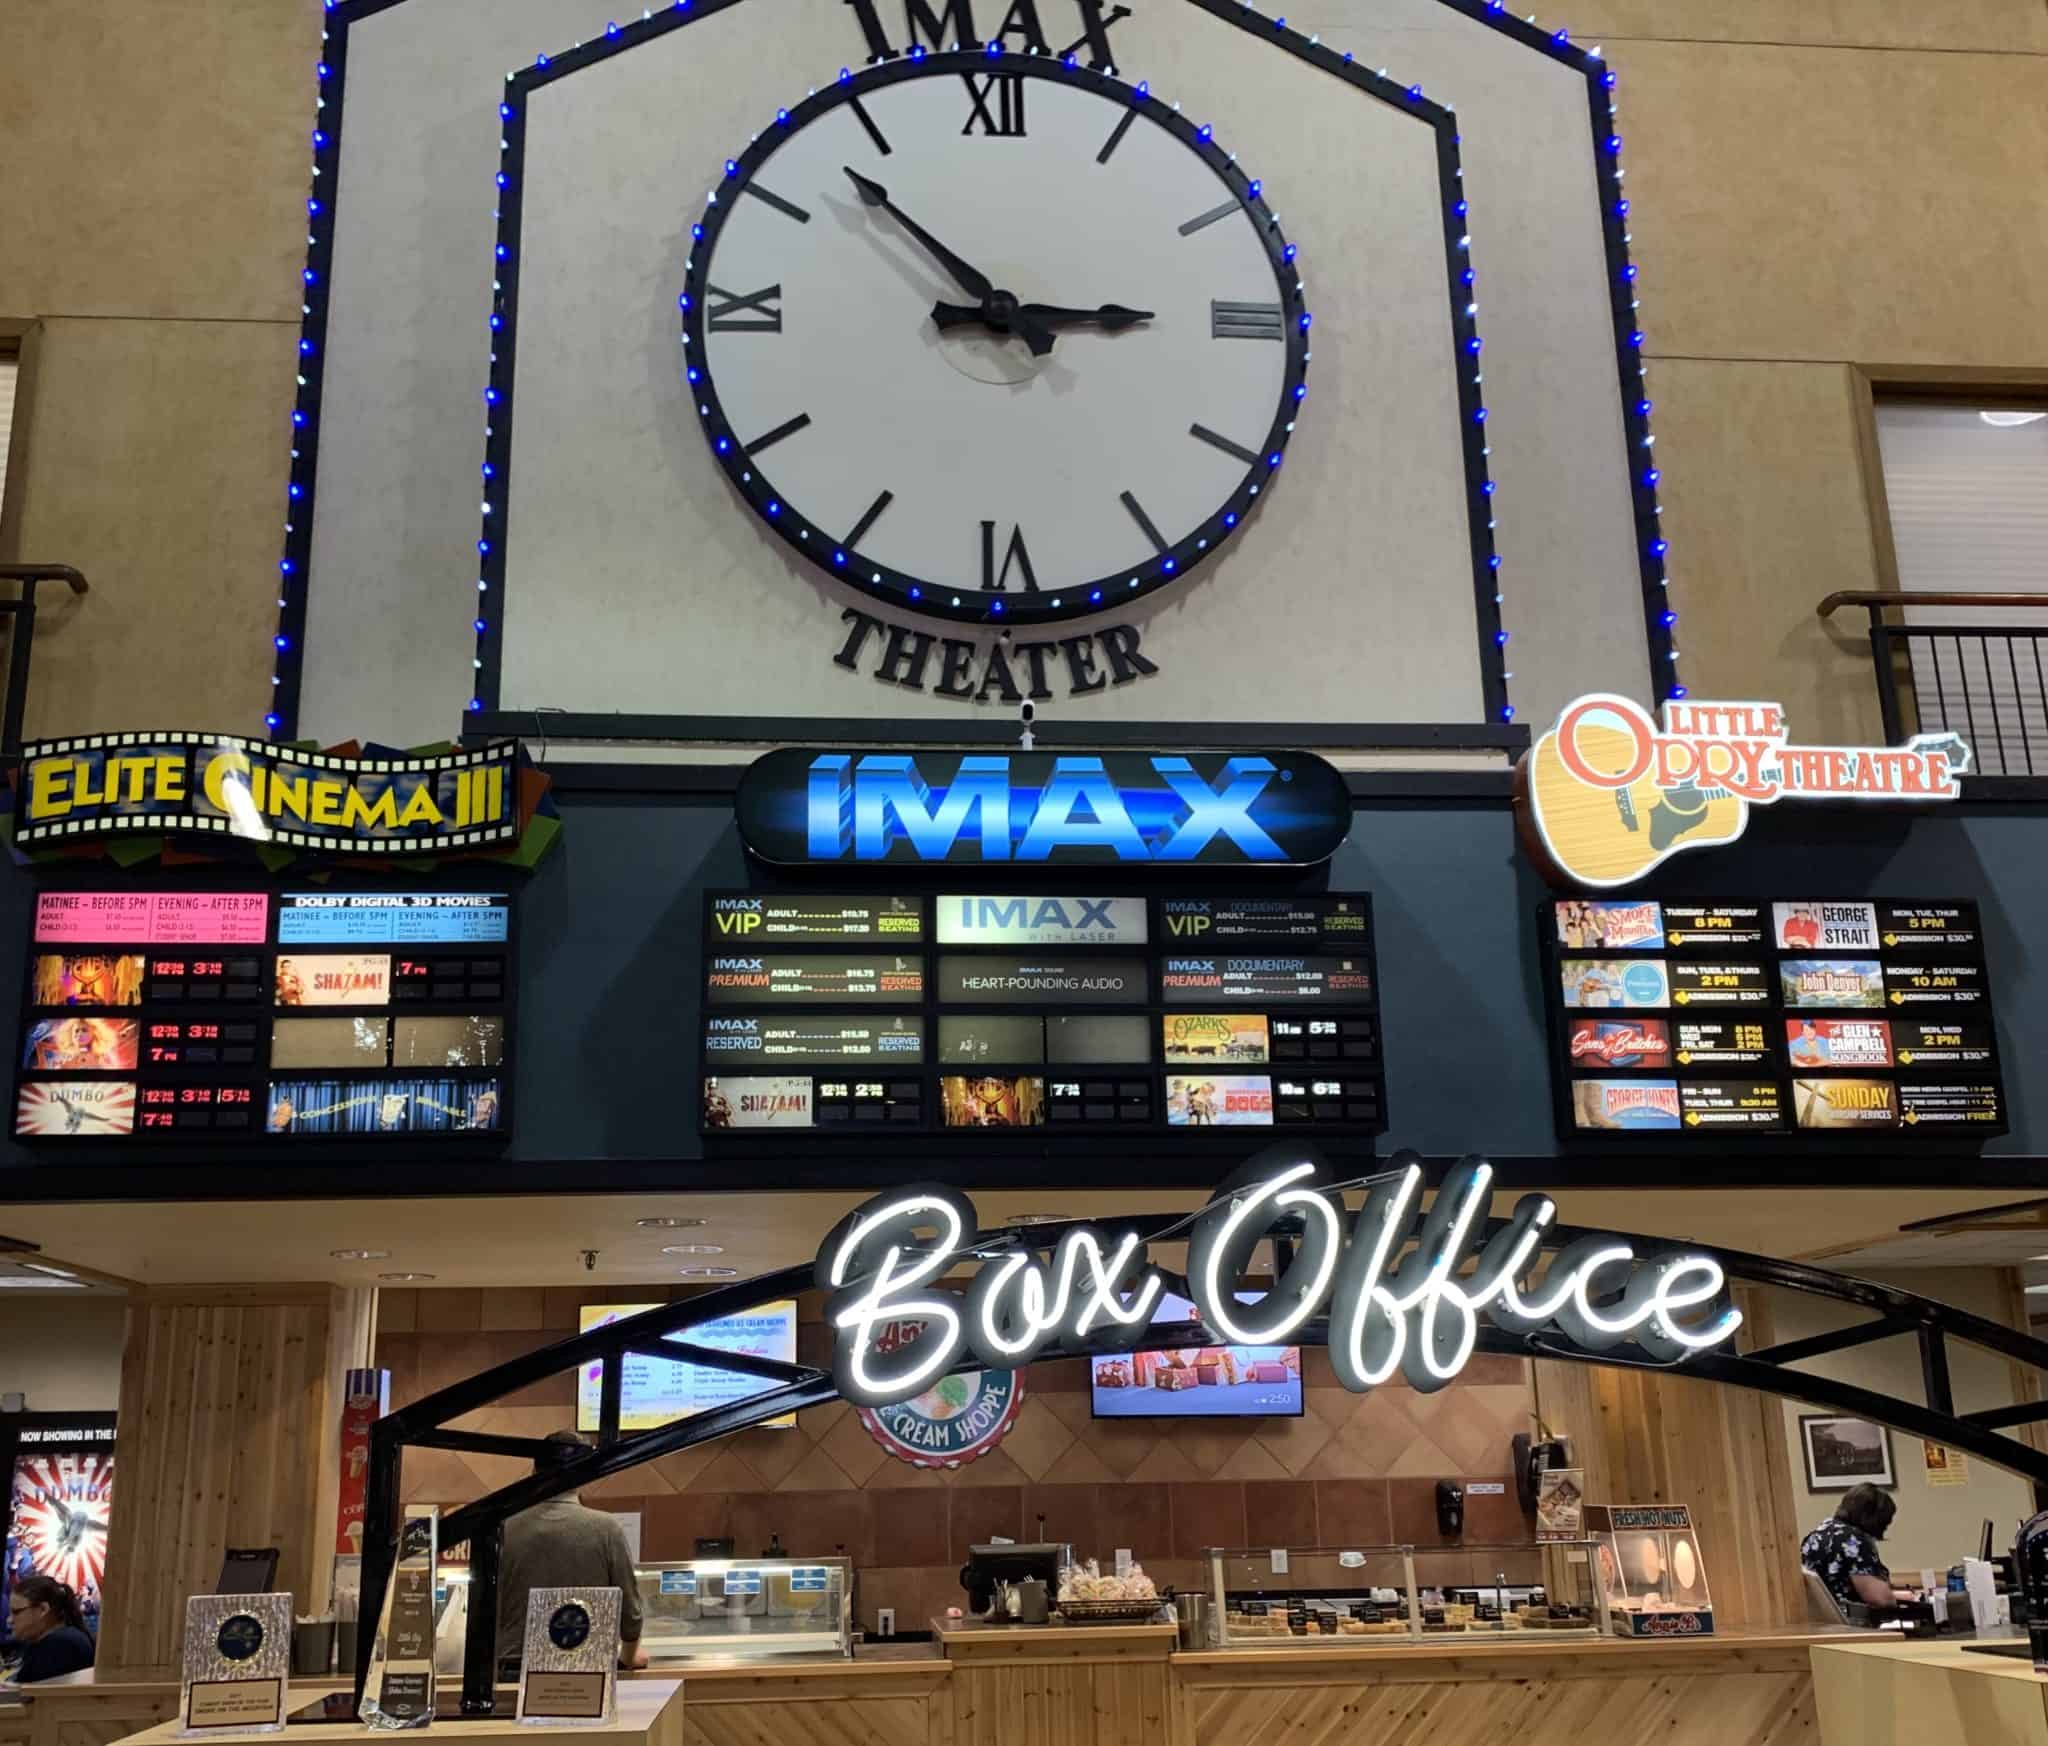 Branson Imax Cinema and Theater Complex Box Office